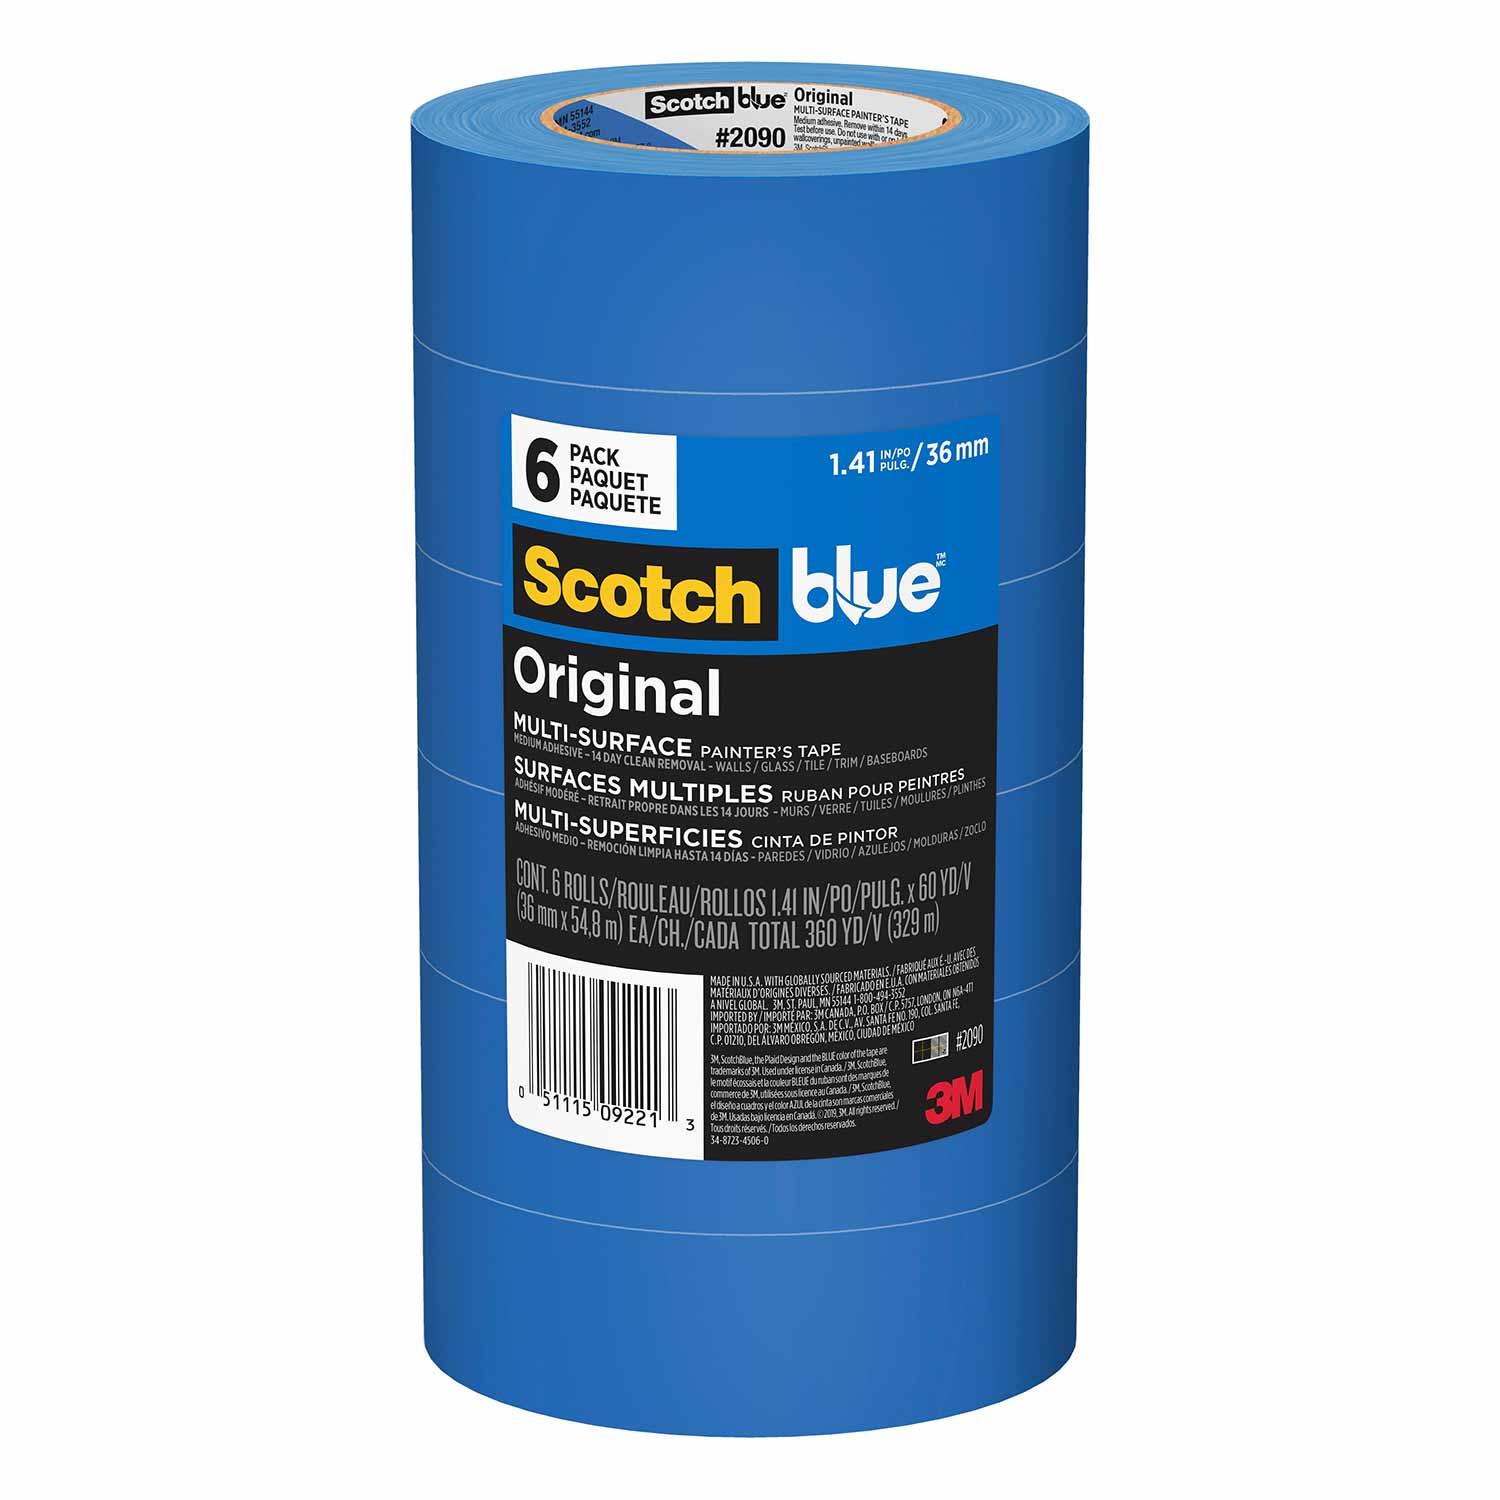 ScotchBlue Original Multi-Surface Painter's Tape, Blue, Paint Tape